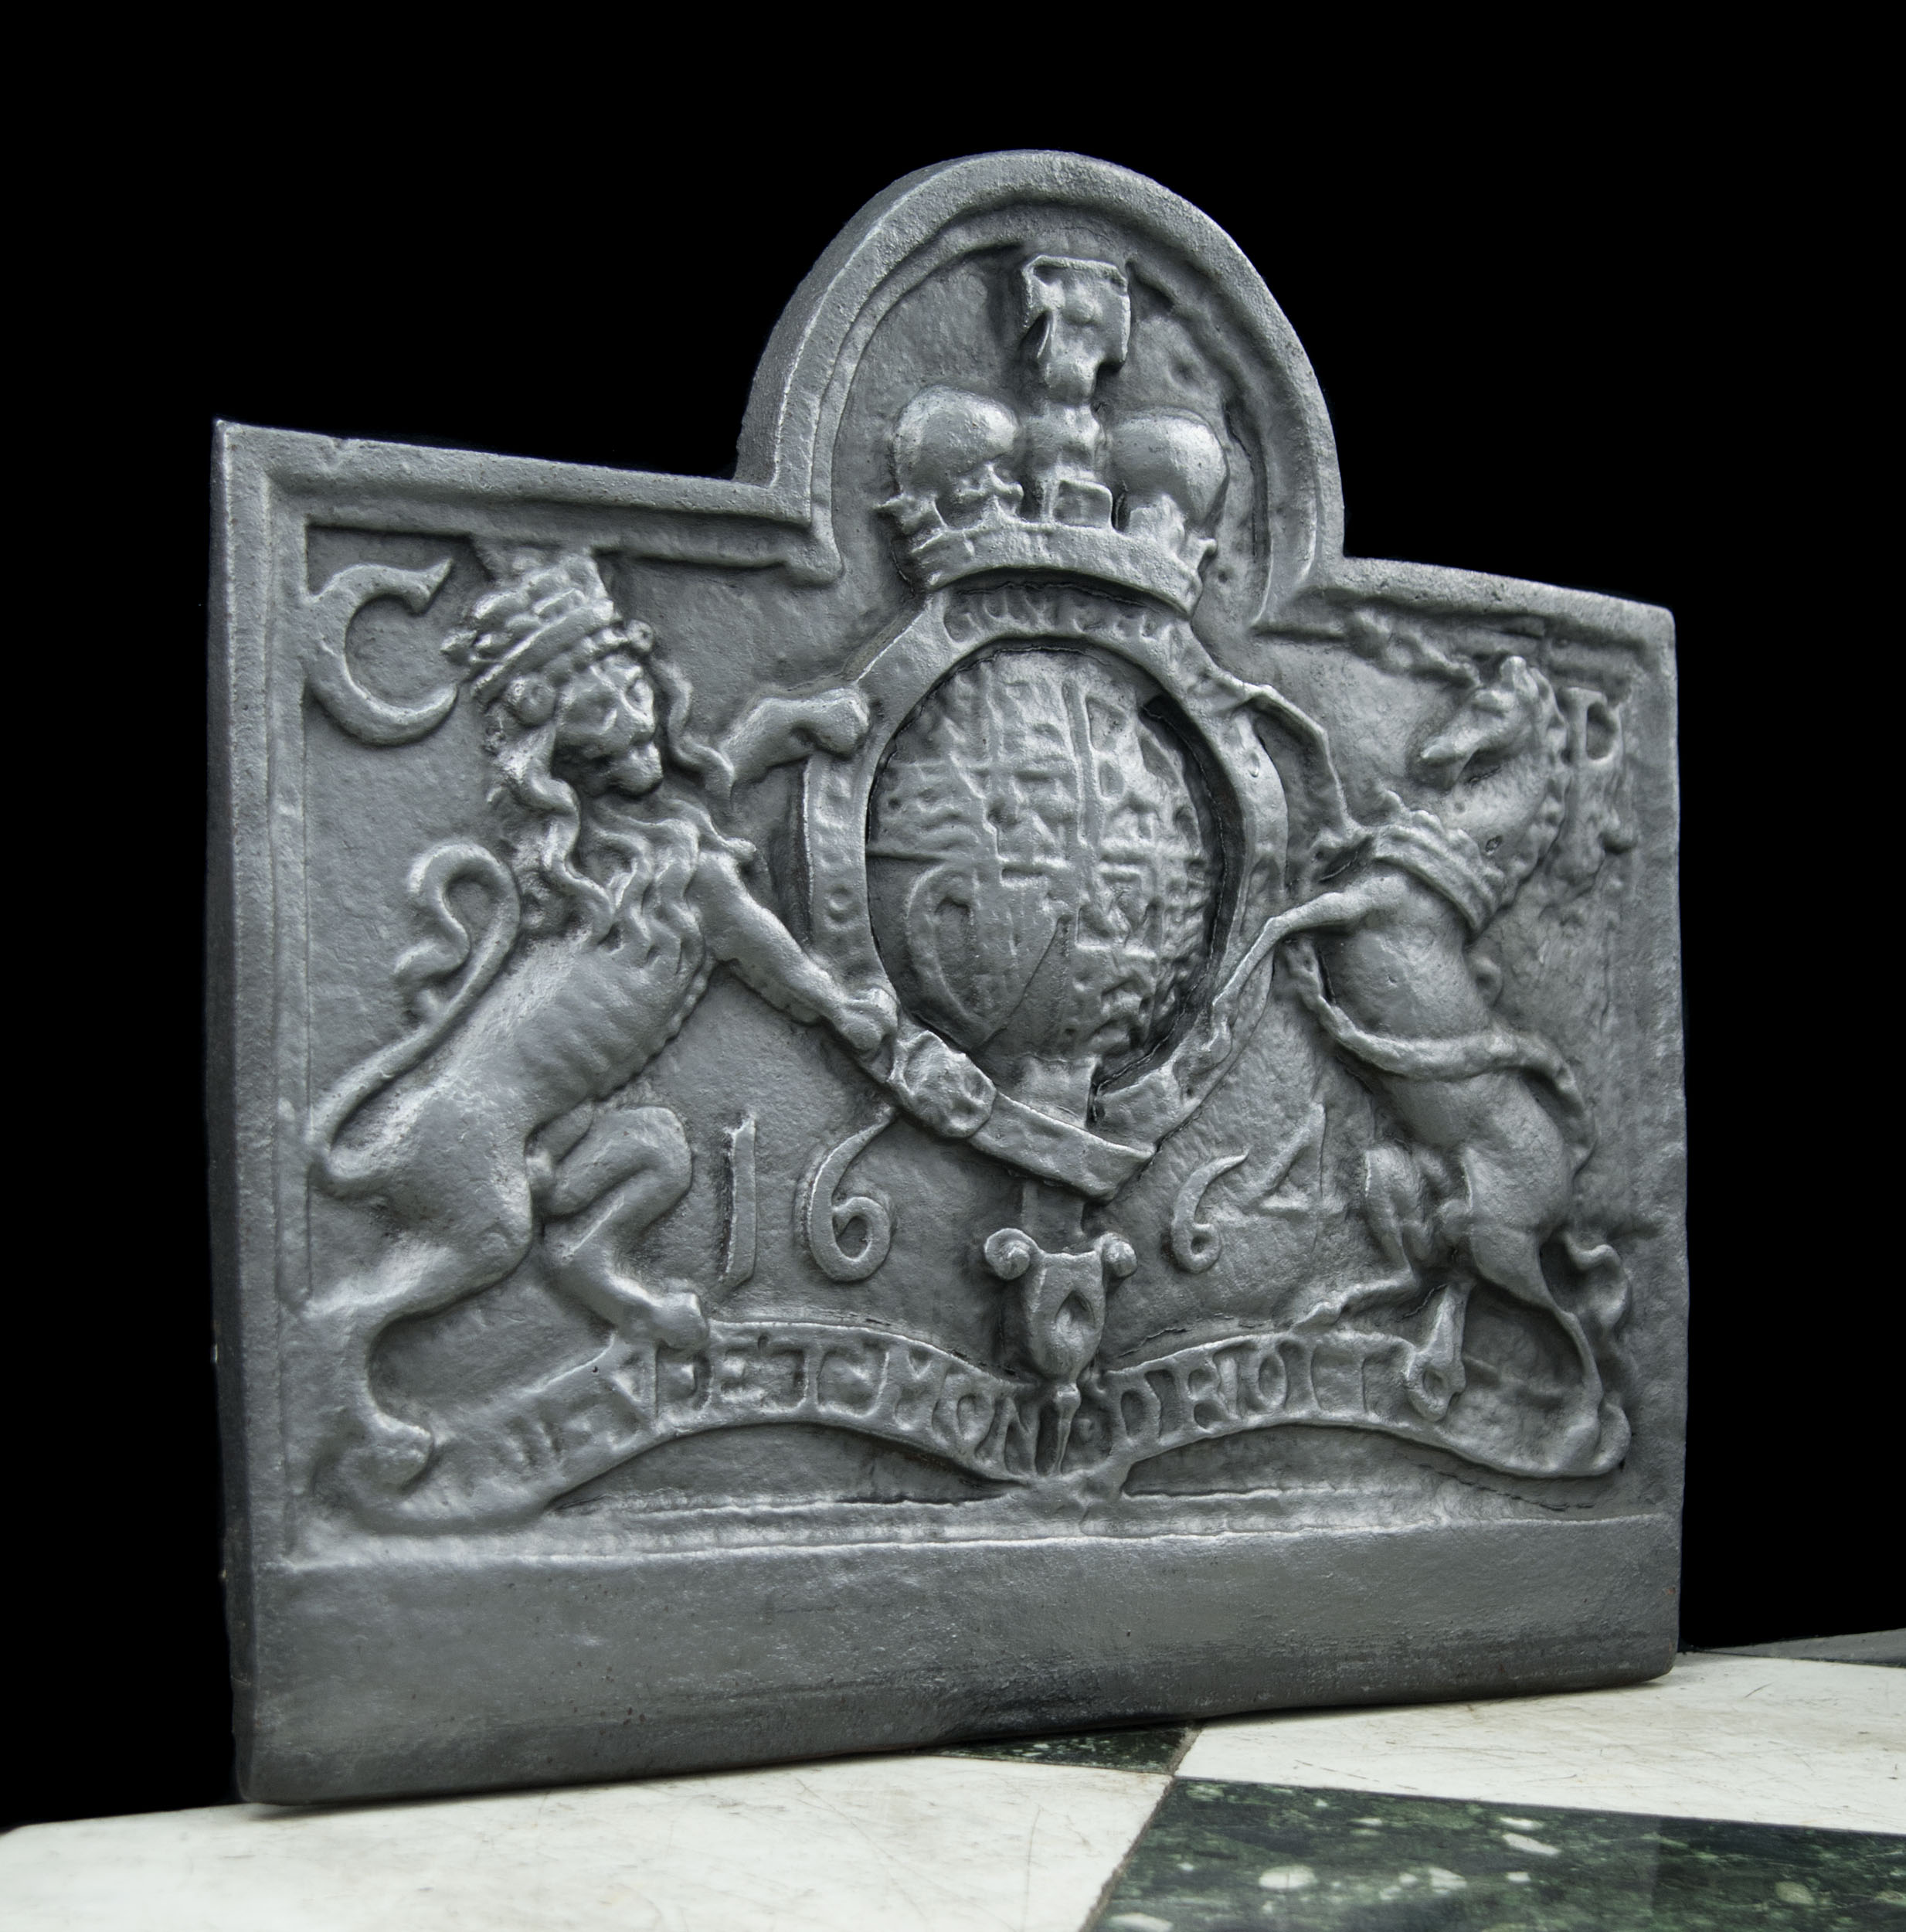 An Heraldic Cast Iron antique fireback